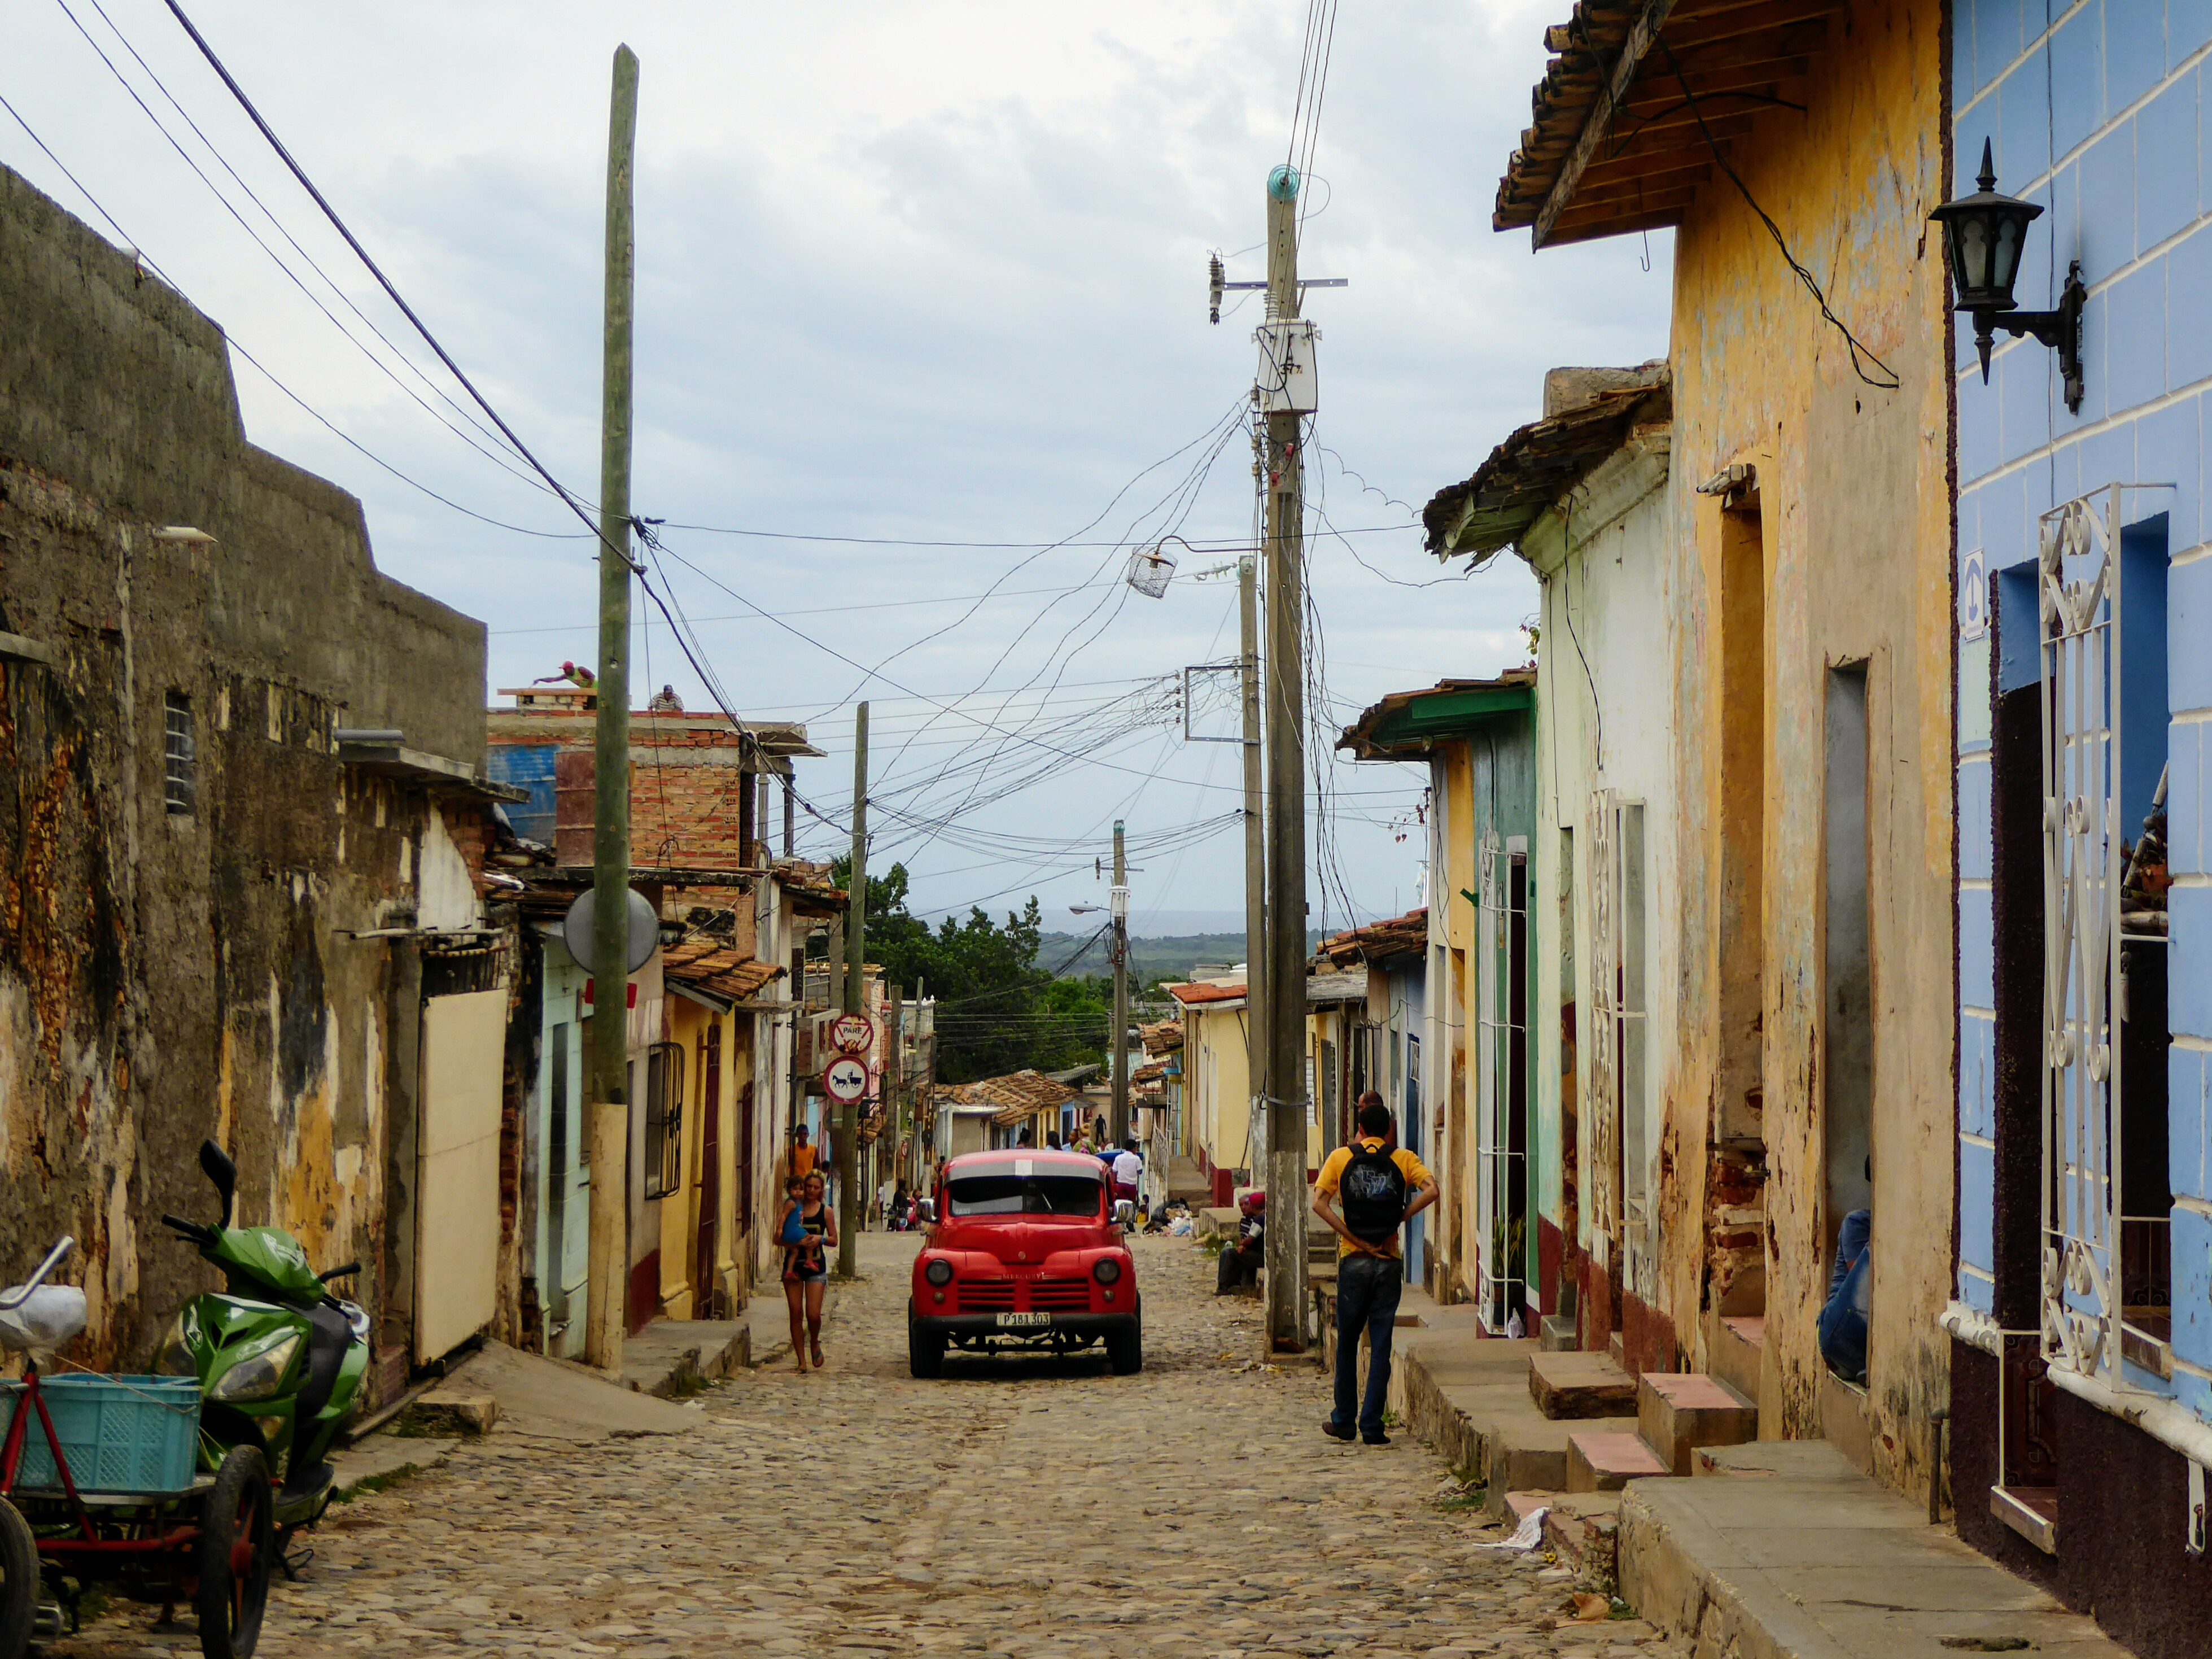 Wandeling door het kleurrijke Trinidad, Cuba